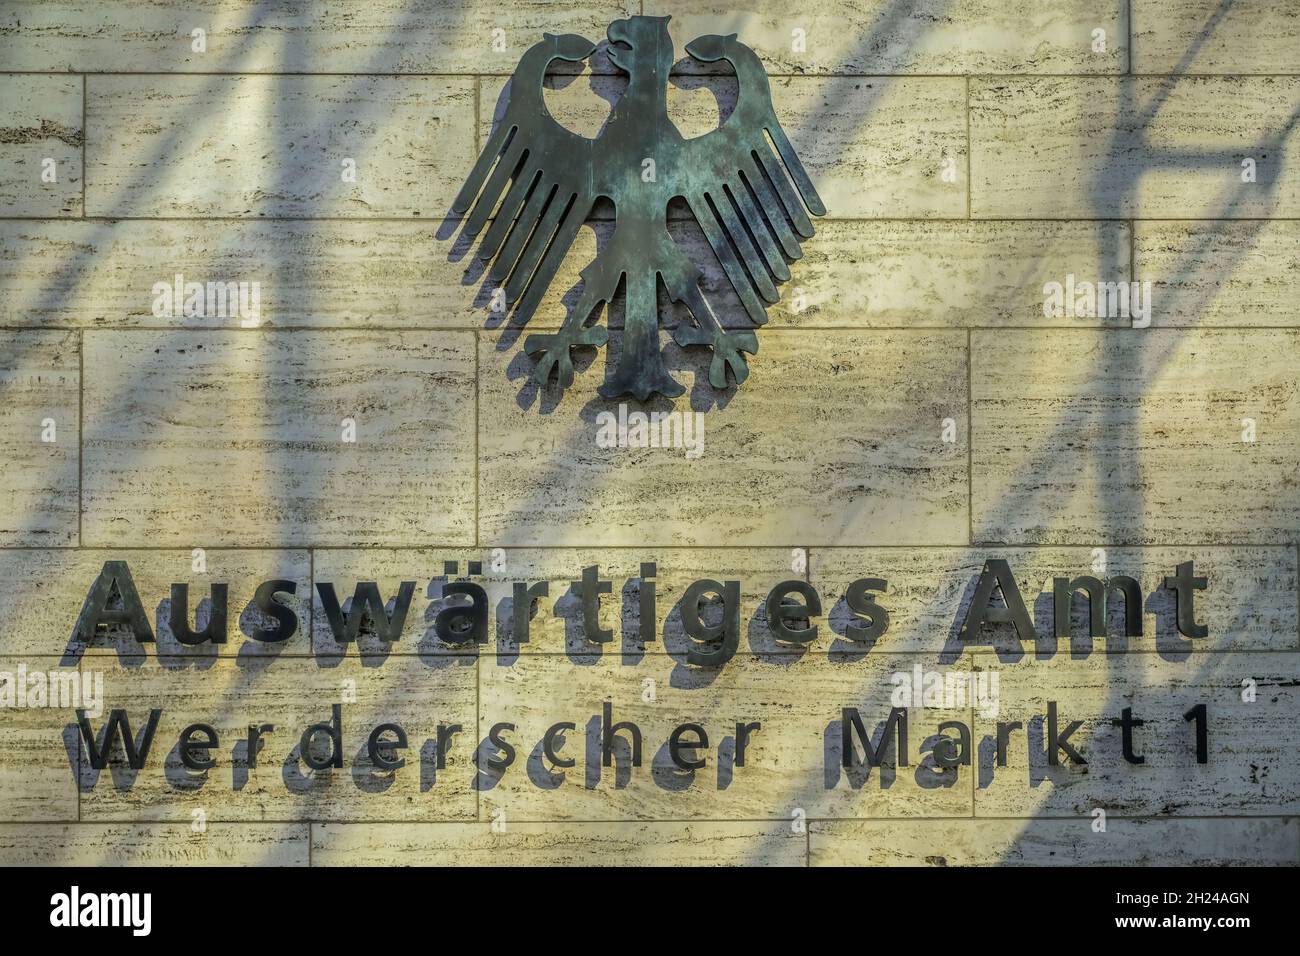 Auswärtiges Amt, Werderscher Markt, Mitte, Berlin, Deutschland Stock Photo